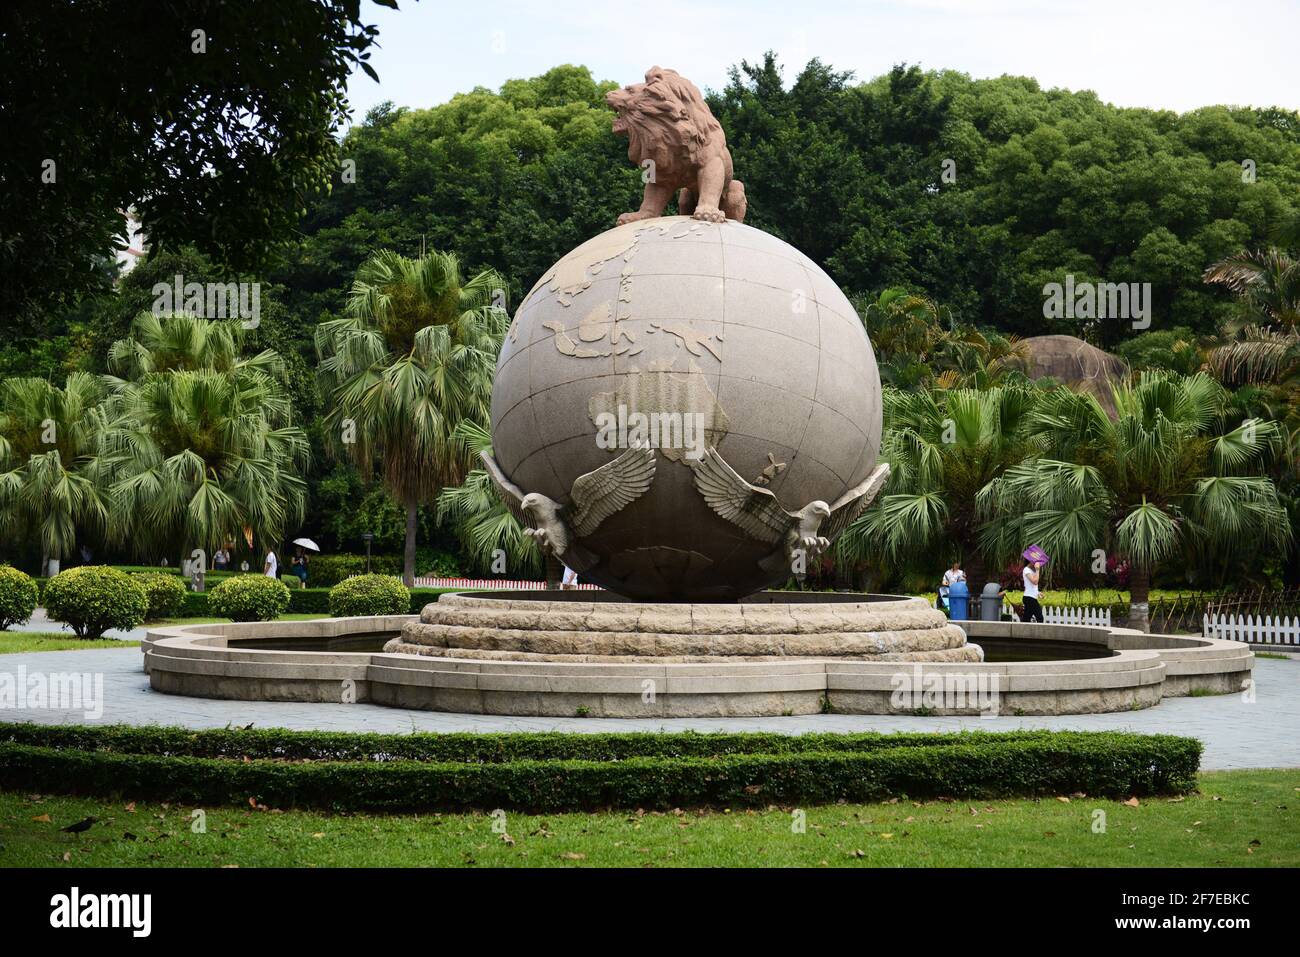 Statue eines Löwen auf Erden im zhongshan Park, stadt xiamen, provinz fujian, China. Stockfoto